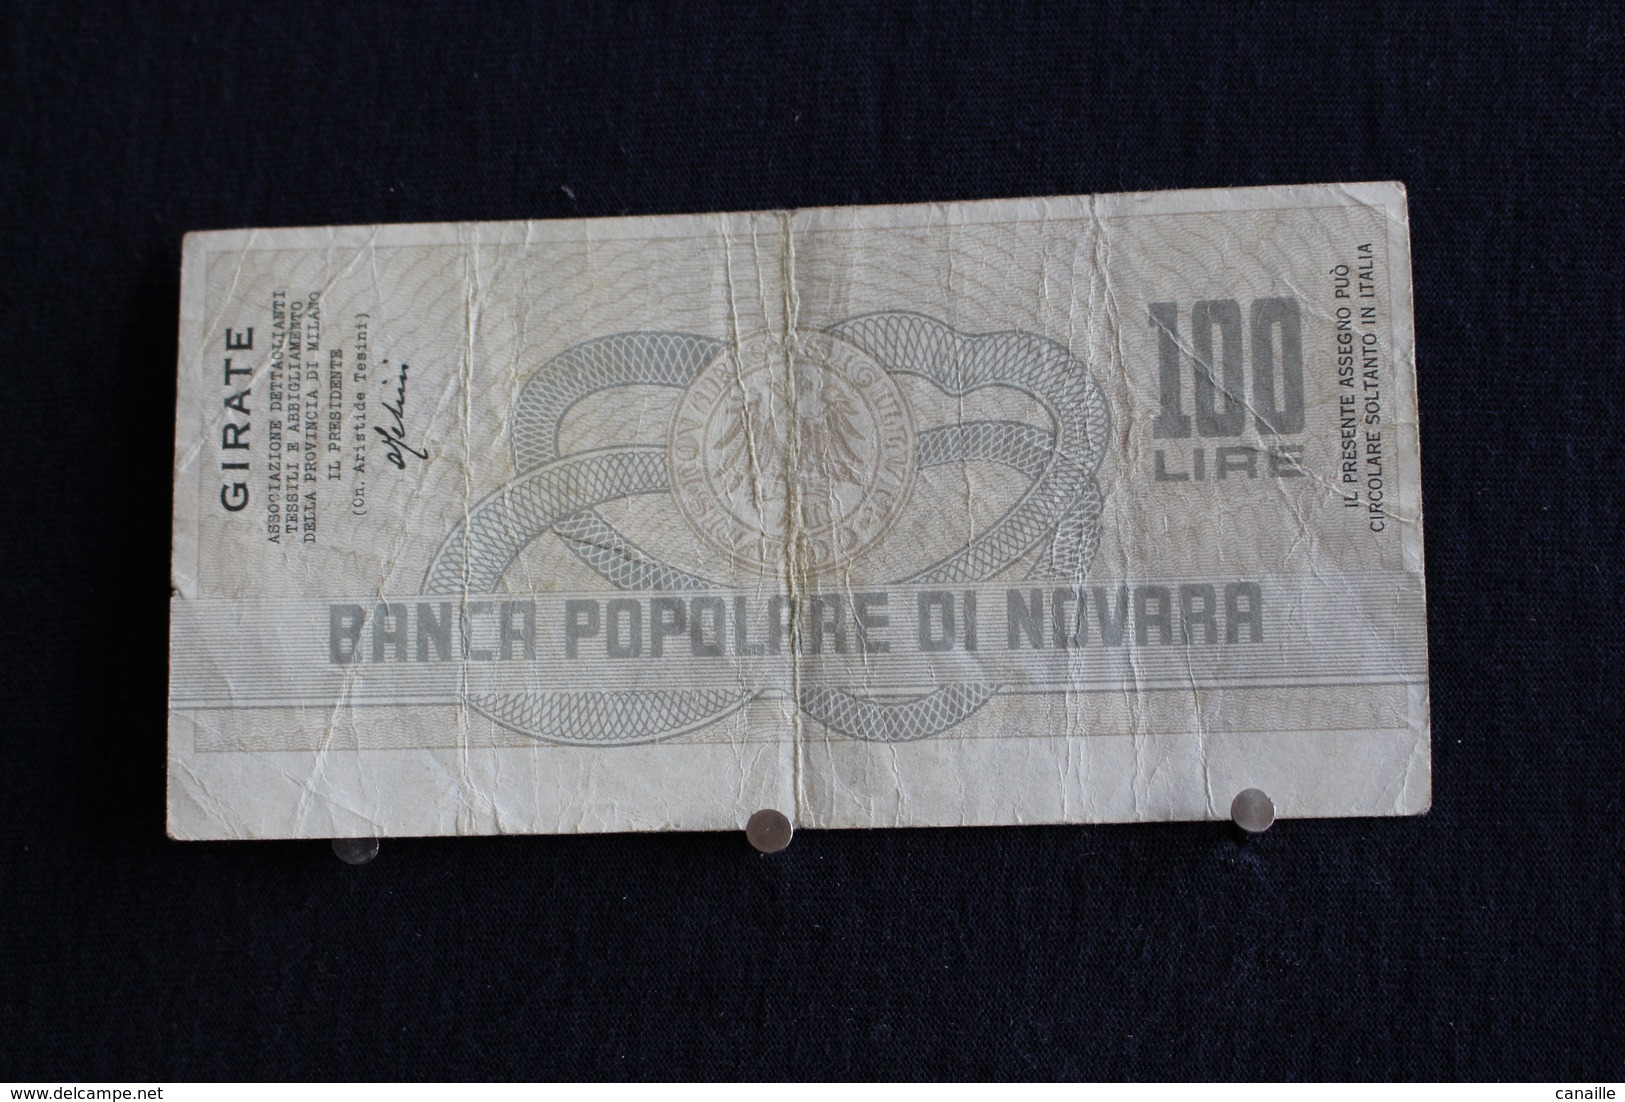 6 / Italie / 1946: Royaume / Biglietti Di Stato - La Banca Popolare Di Novara, 18/7/77 - Vale 100 Lire - - 100 Liras